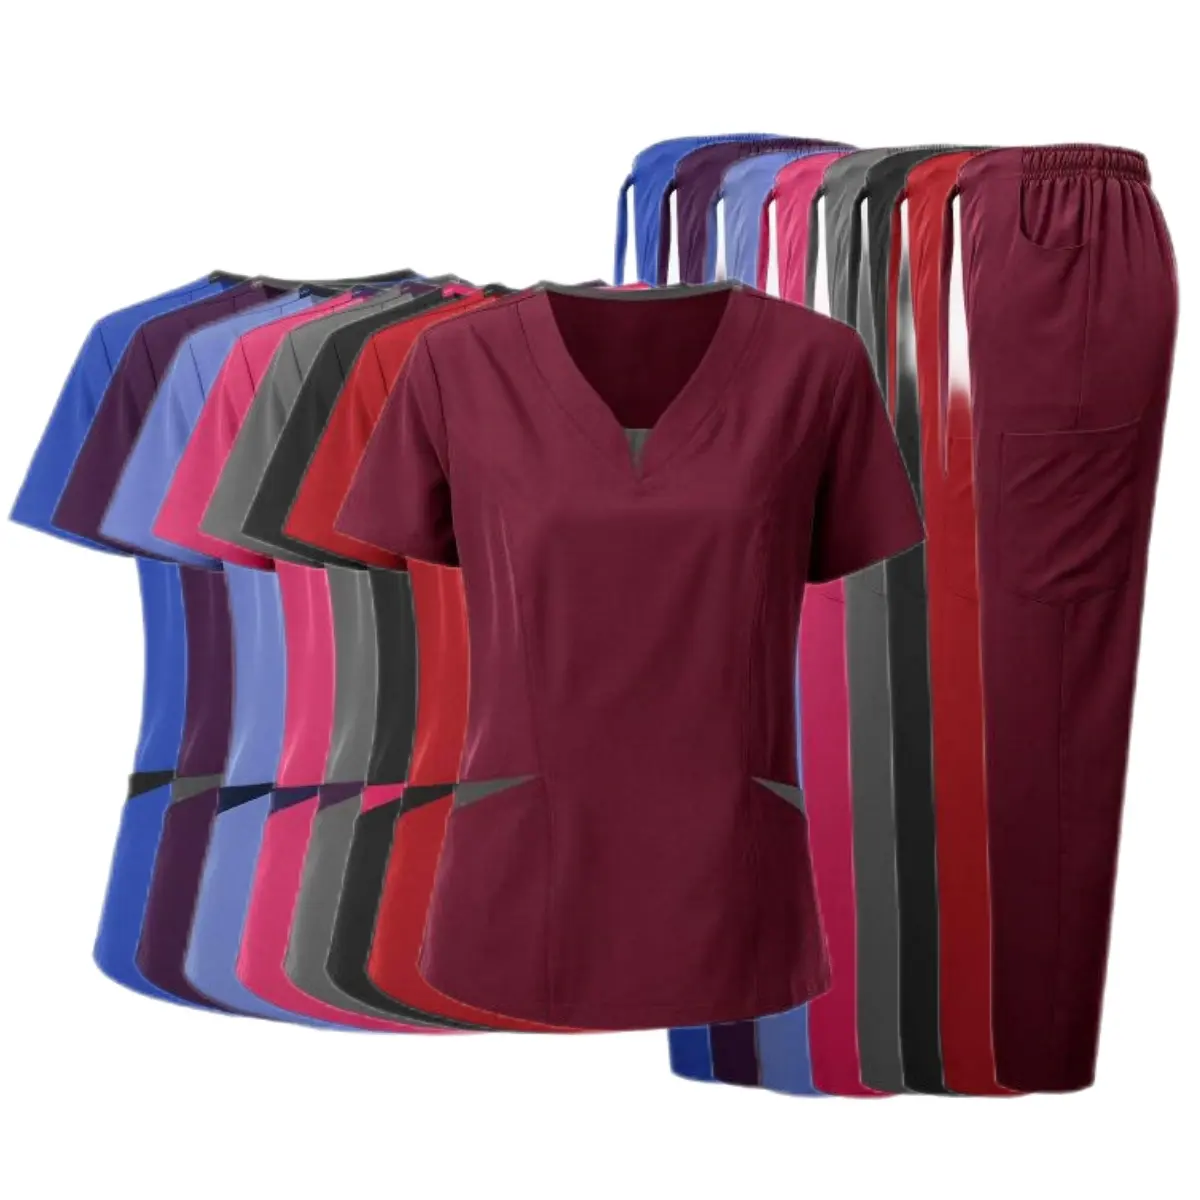 Pakaian renang wanita melar kantung samping LOGO kustom 52012 pakaian penutup wanita kasual musim dingin pakaian perawat wanita